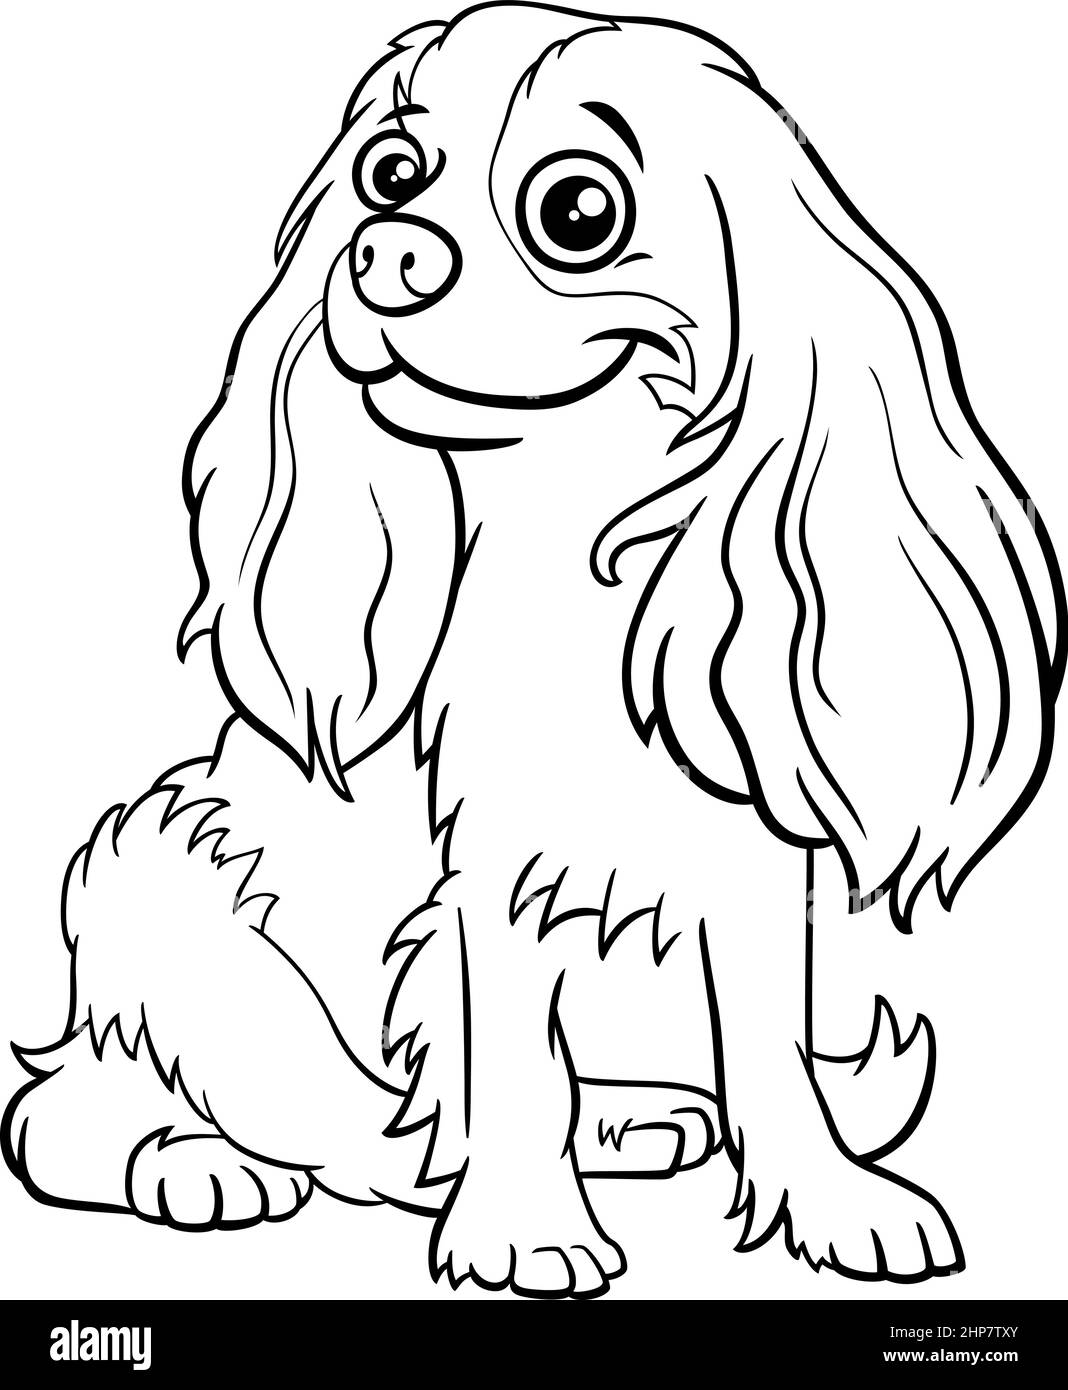 Bande dessinée cavalier King Charles page de livre de coloriage de chien de race pure Illustration de Vecteur